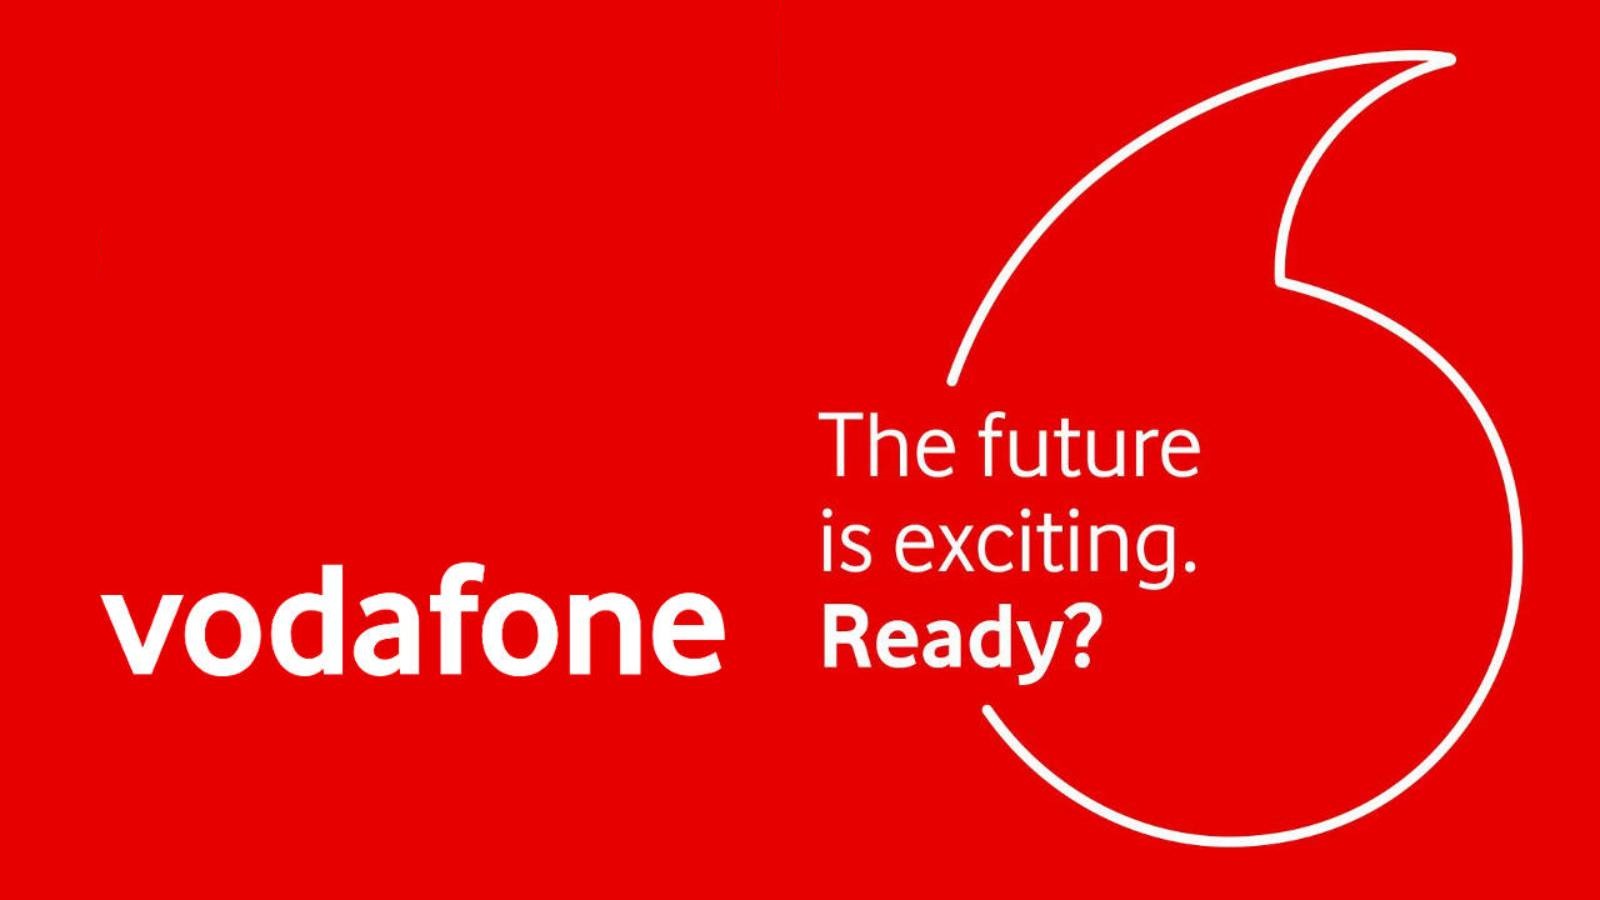 Die offiziellen Nachrichten von Vodafone bieten rumänischen Kunden KOSTENLOS an